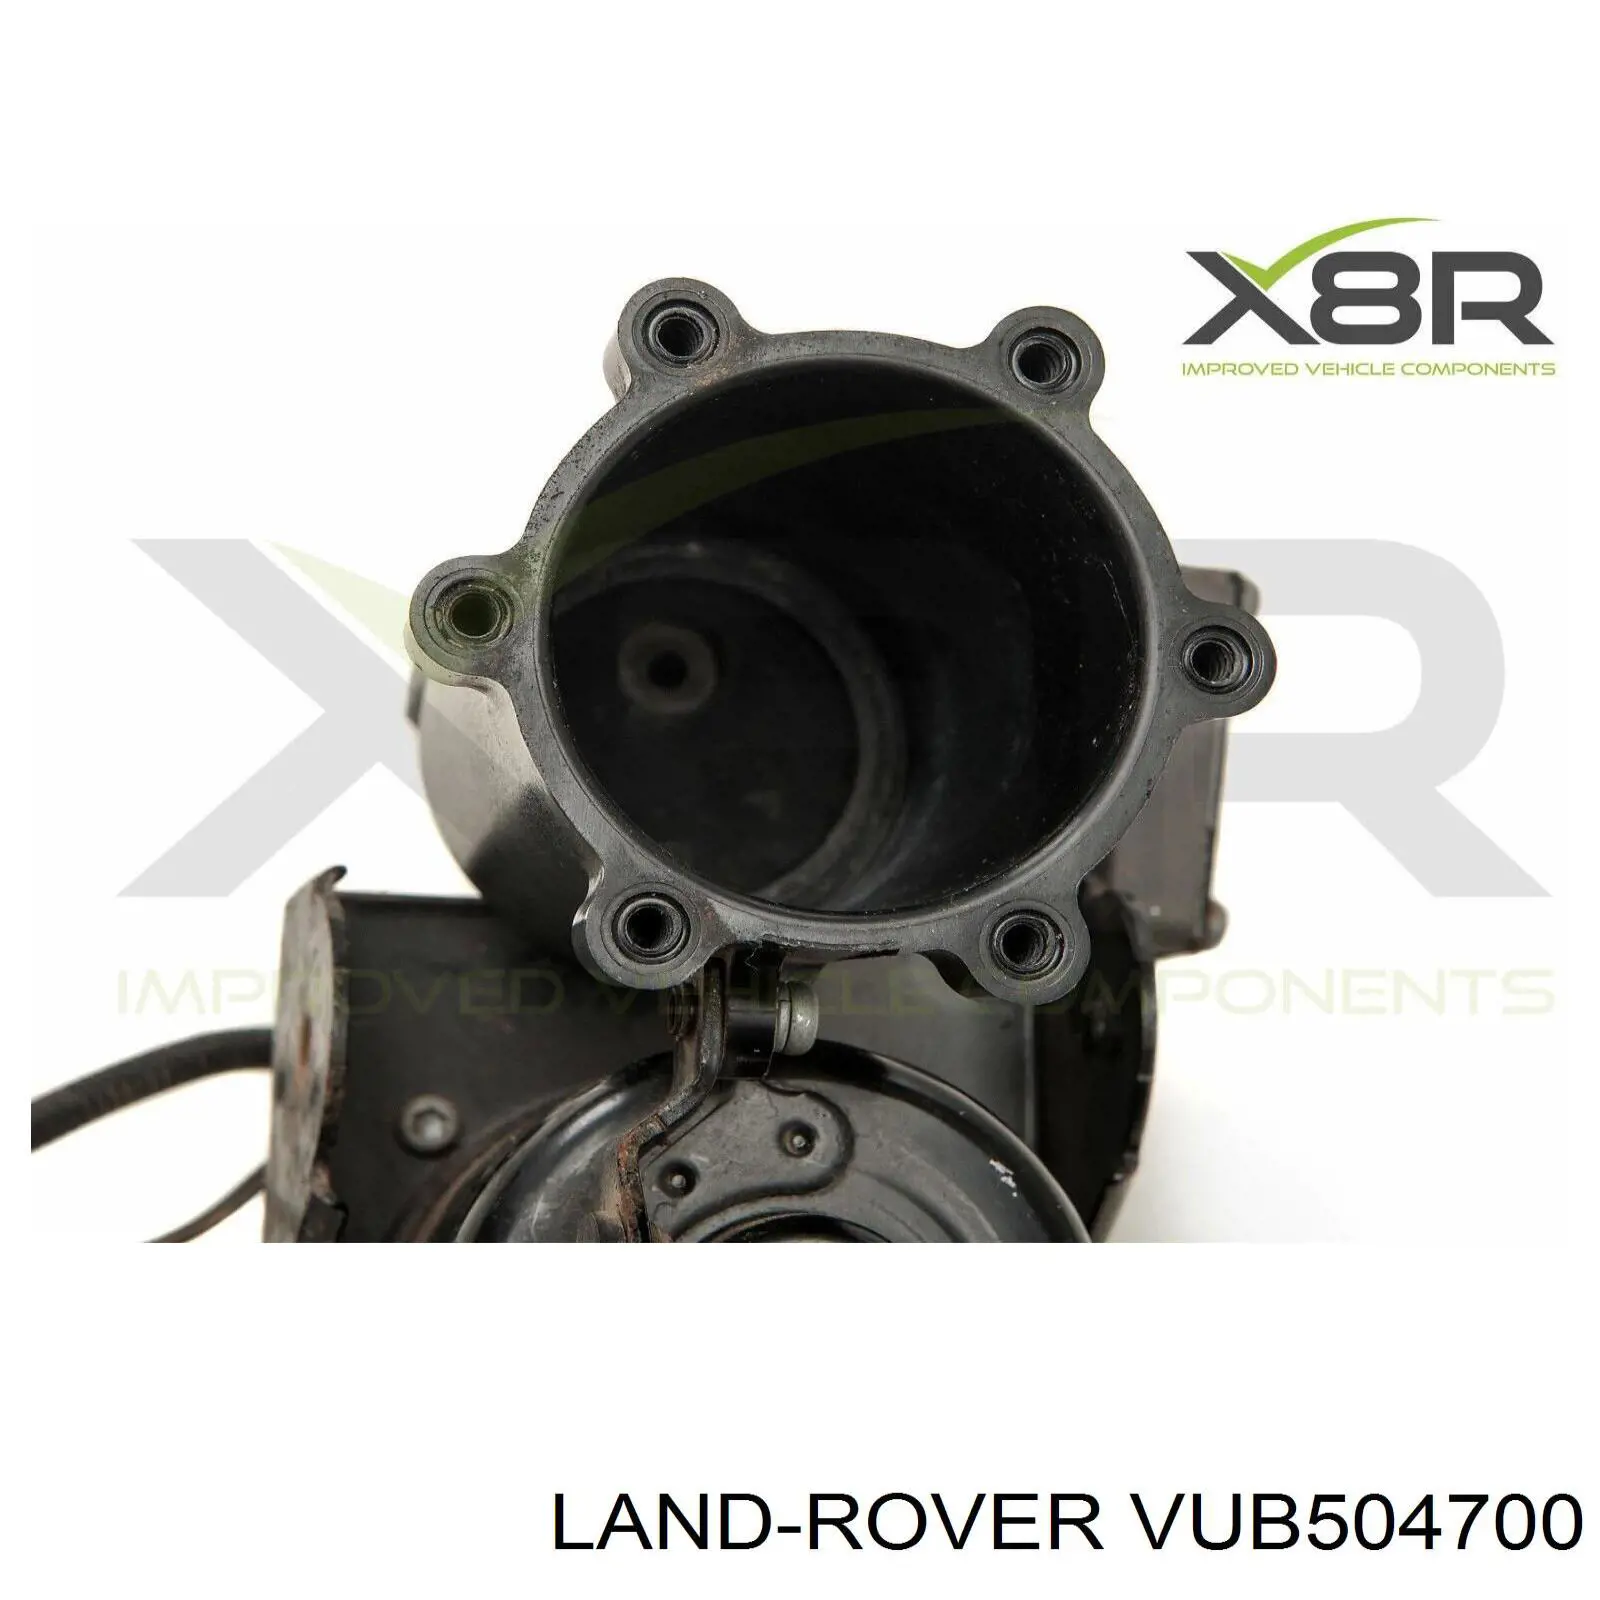 VUB504700 Land Rover осушитель воздуха пневматической системы